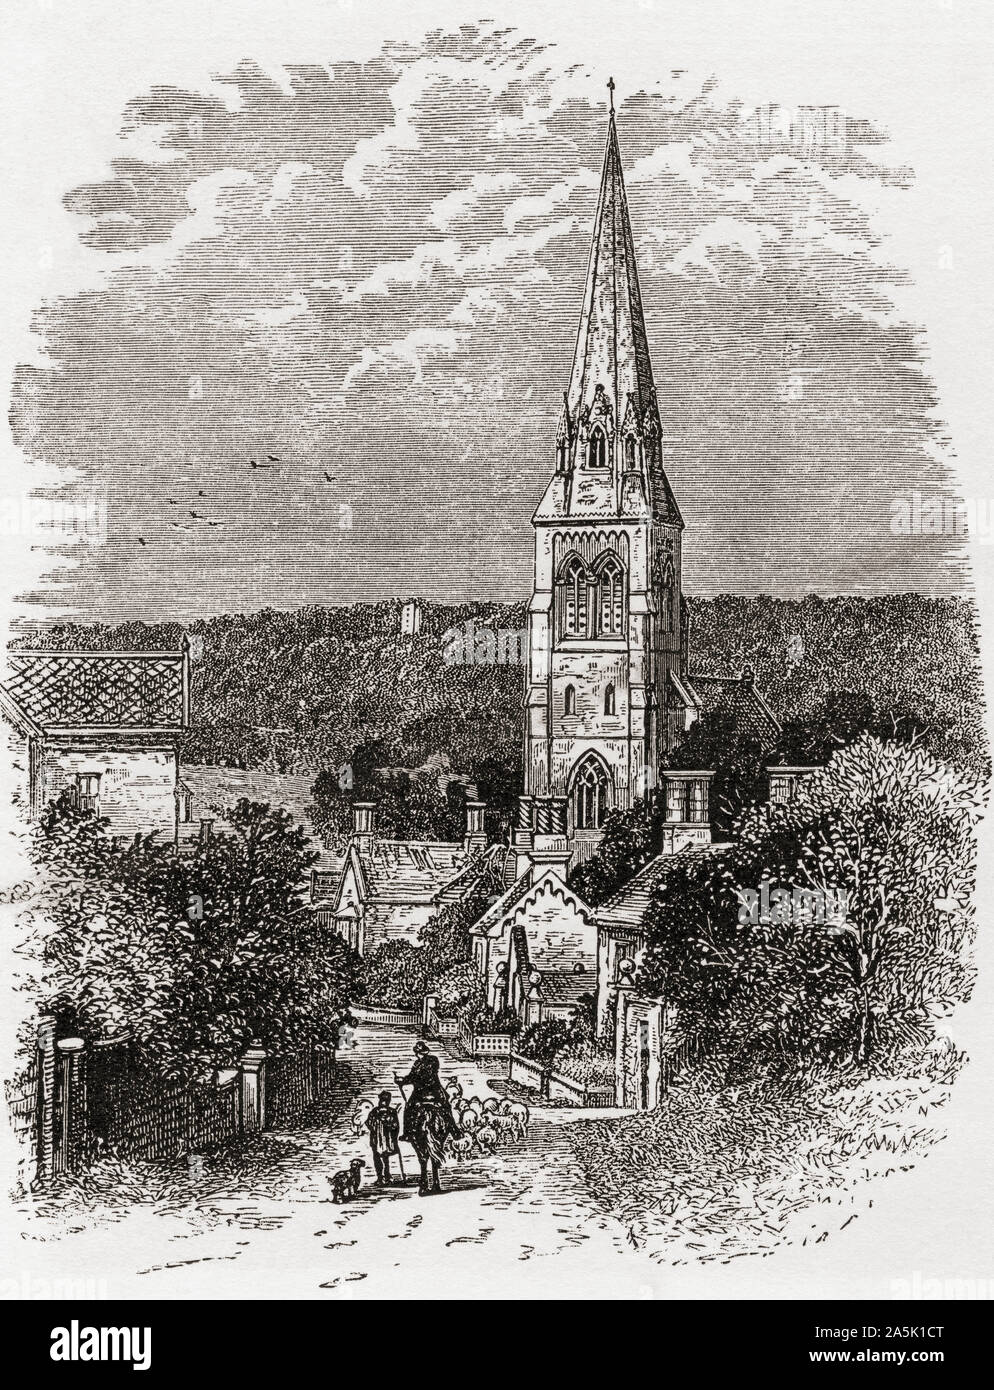 La Iglesia de San Pedro, Edensor, Derbyshire, Inglaterra, visto aquí en el siglo XIX. Fotos de inglés, publicado el año 1890. Foto de stock